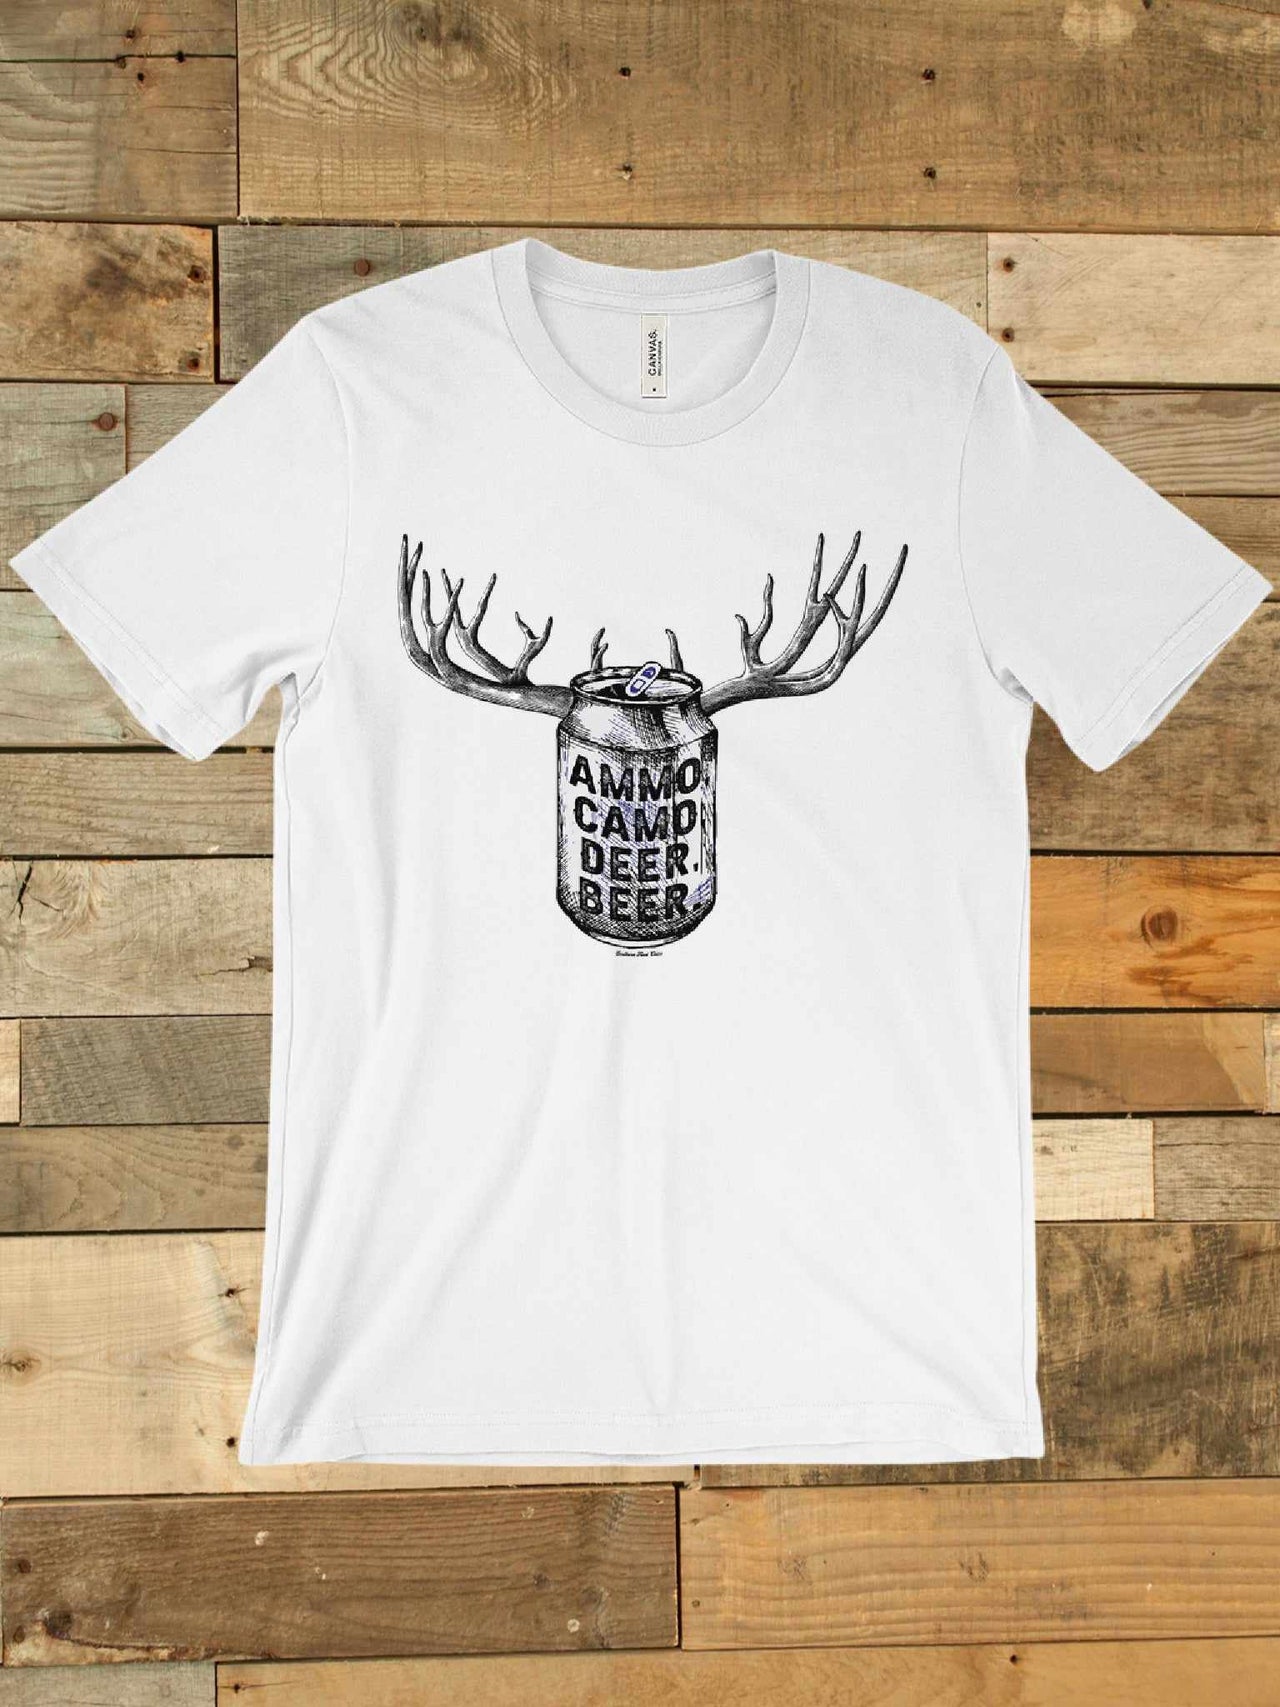 Ammo Camo Deer Beer T shirt